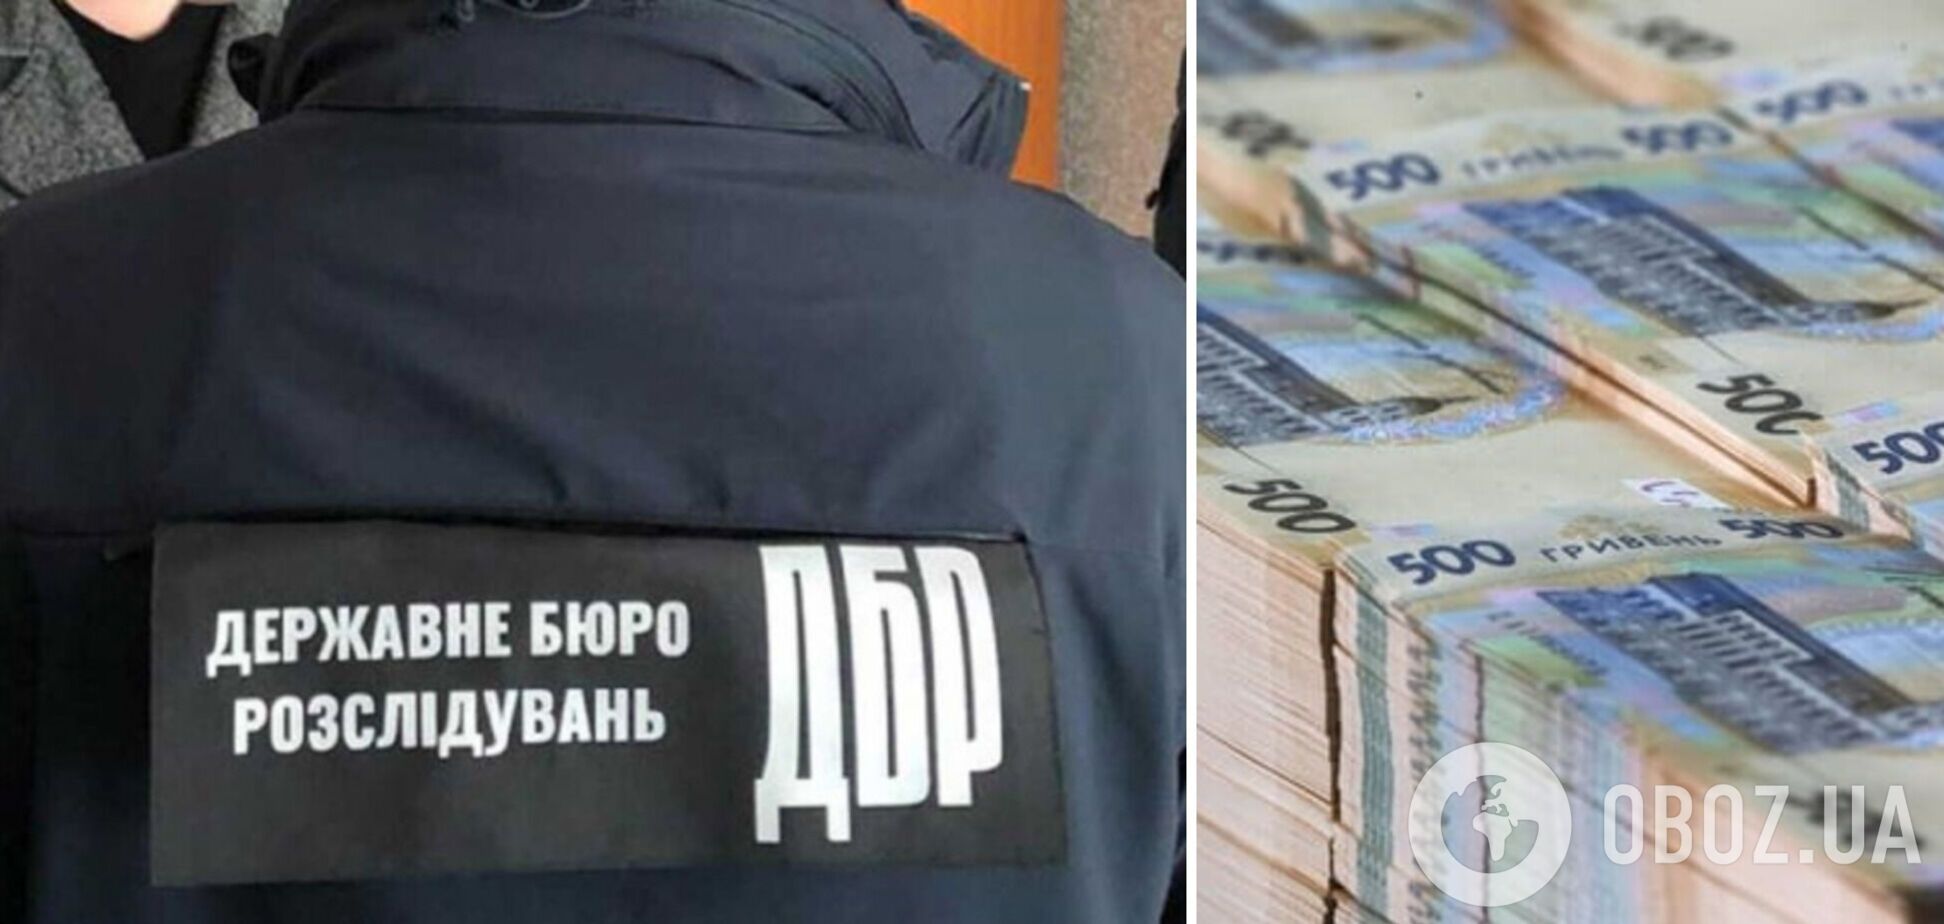 ГБР расследует хищение имущества украинских предпринимателей на Сумщине 